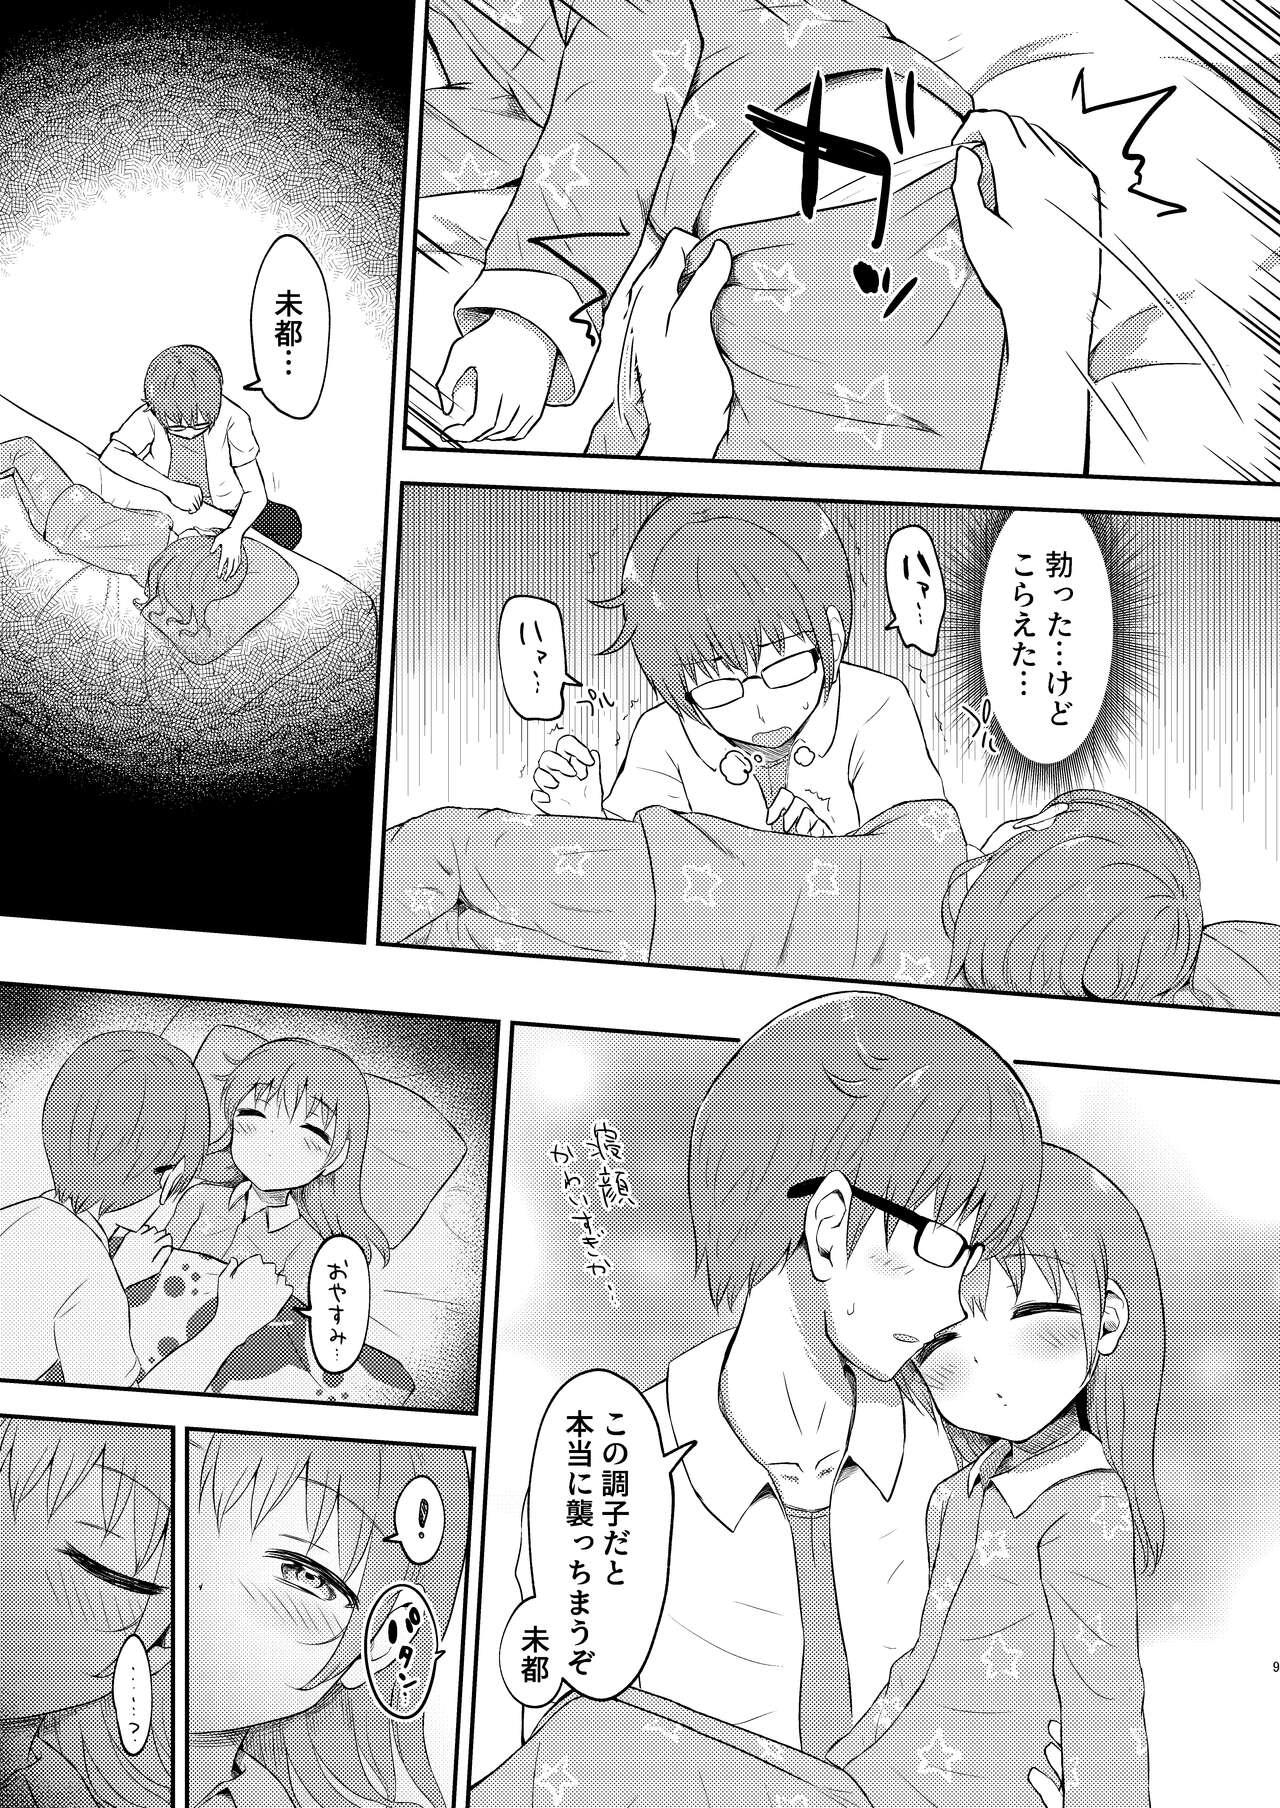 Breeding Imouto-chan wa Arawaretai!! 3 - Original Family - Page 9